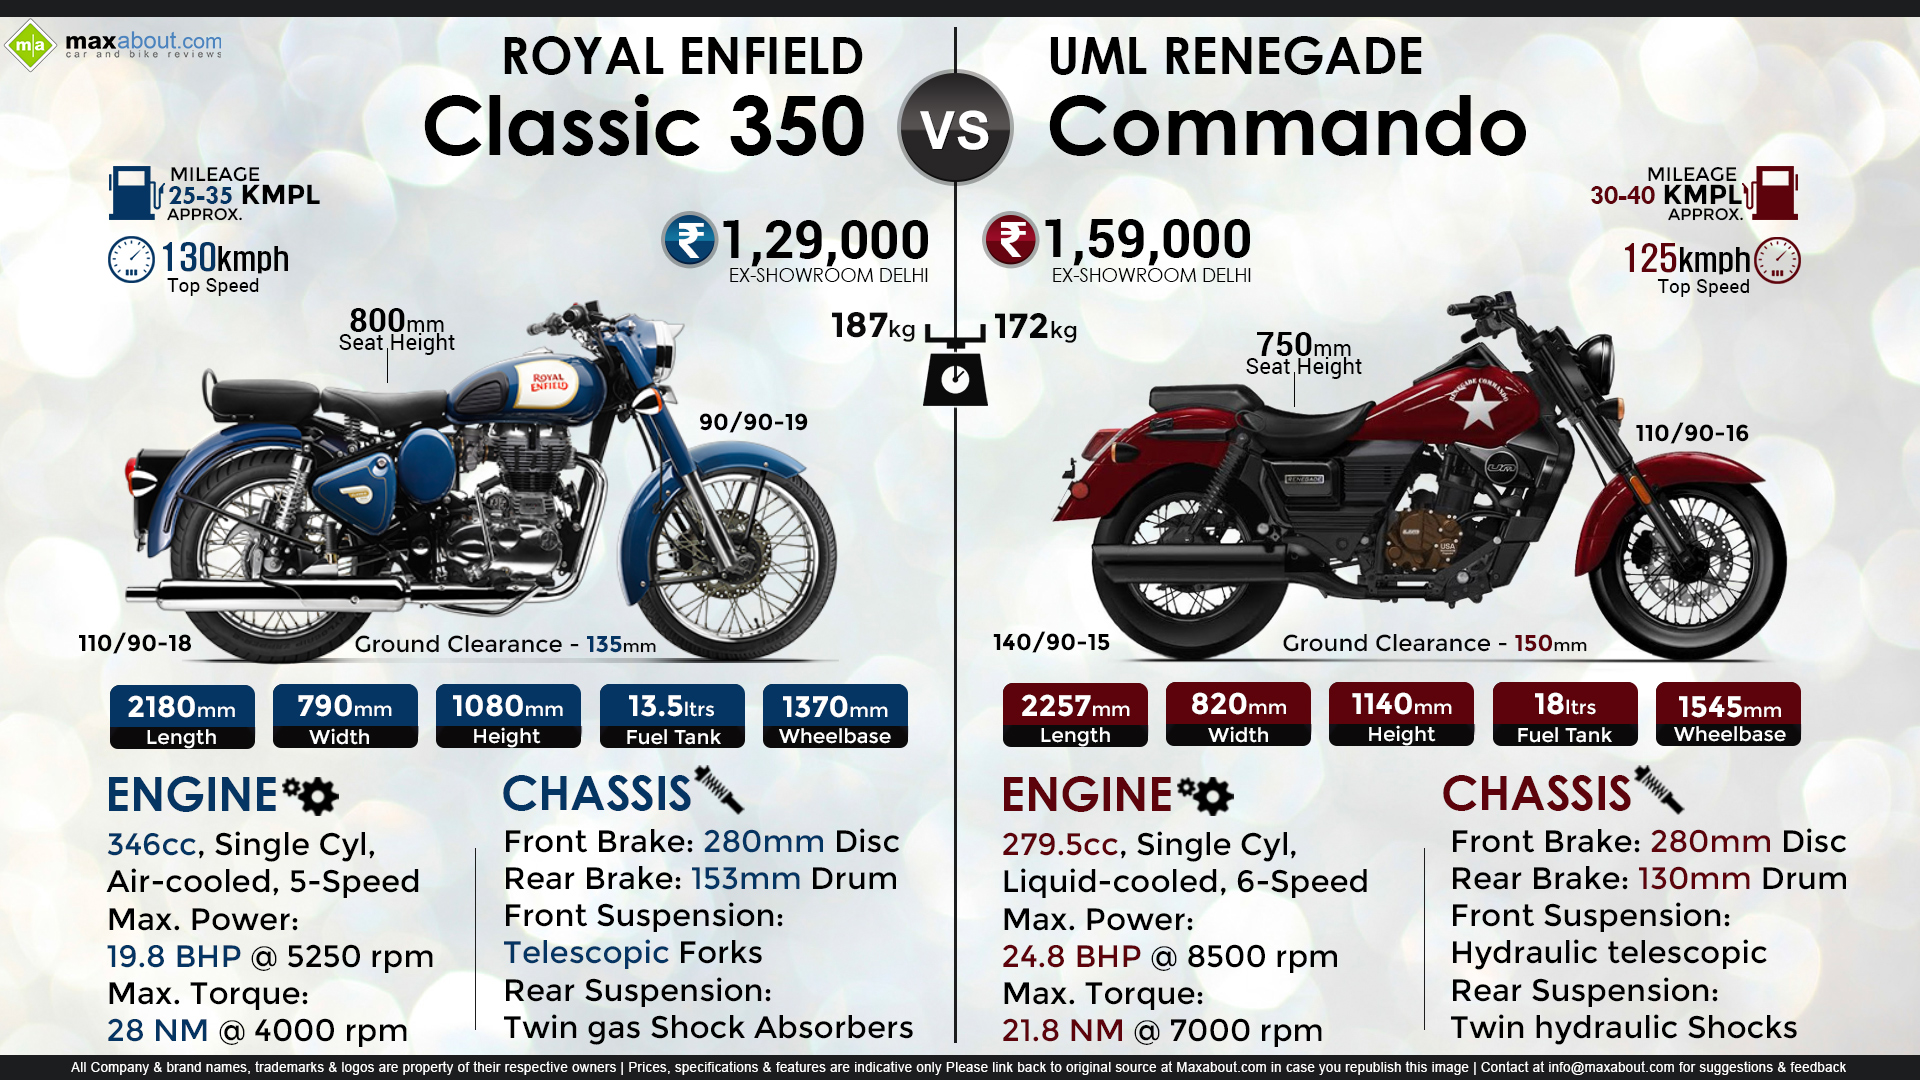 Royal Enfield Classic 350 vs. UM Renegade Commando 300